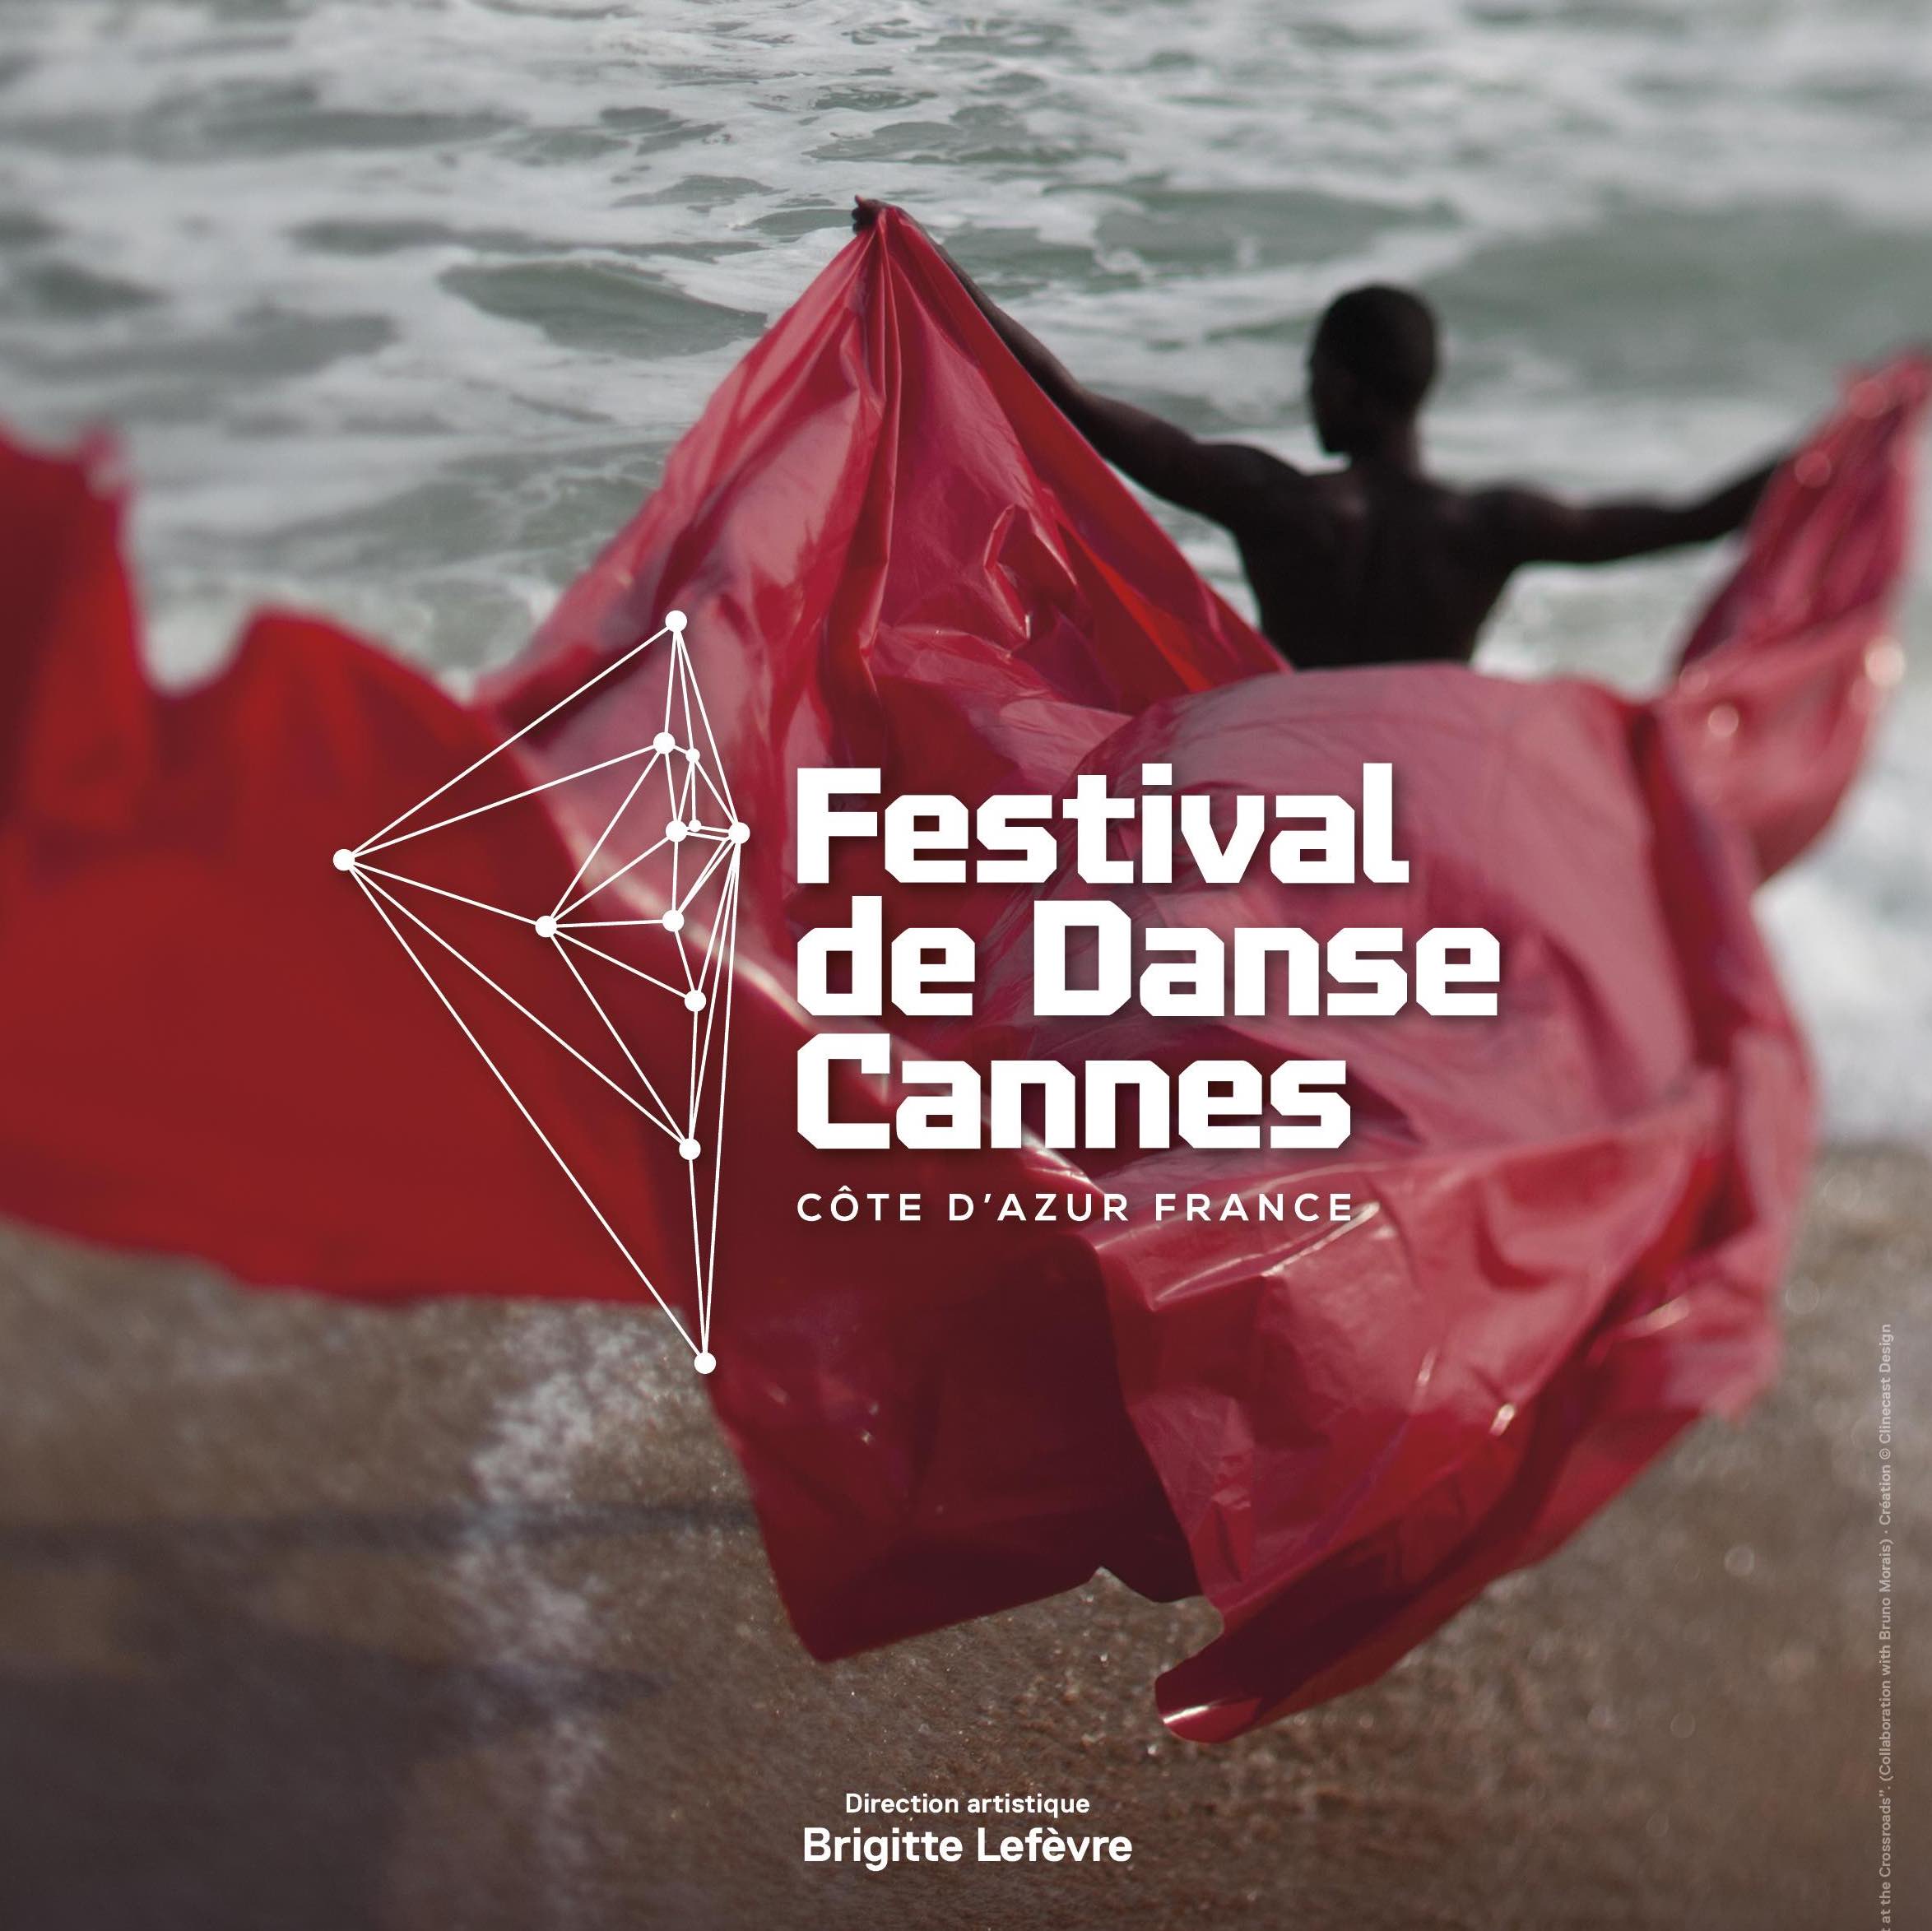 Archivé: Festival de danse de Cannes